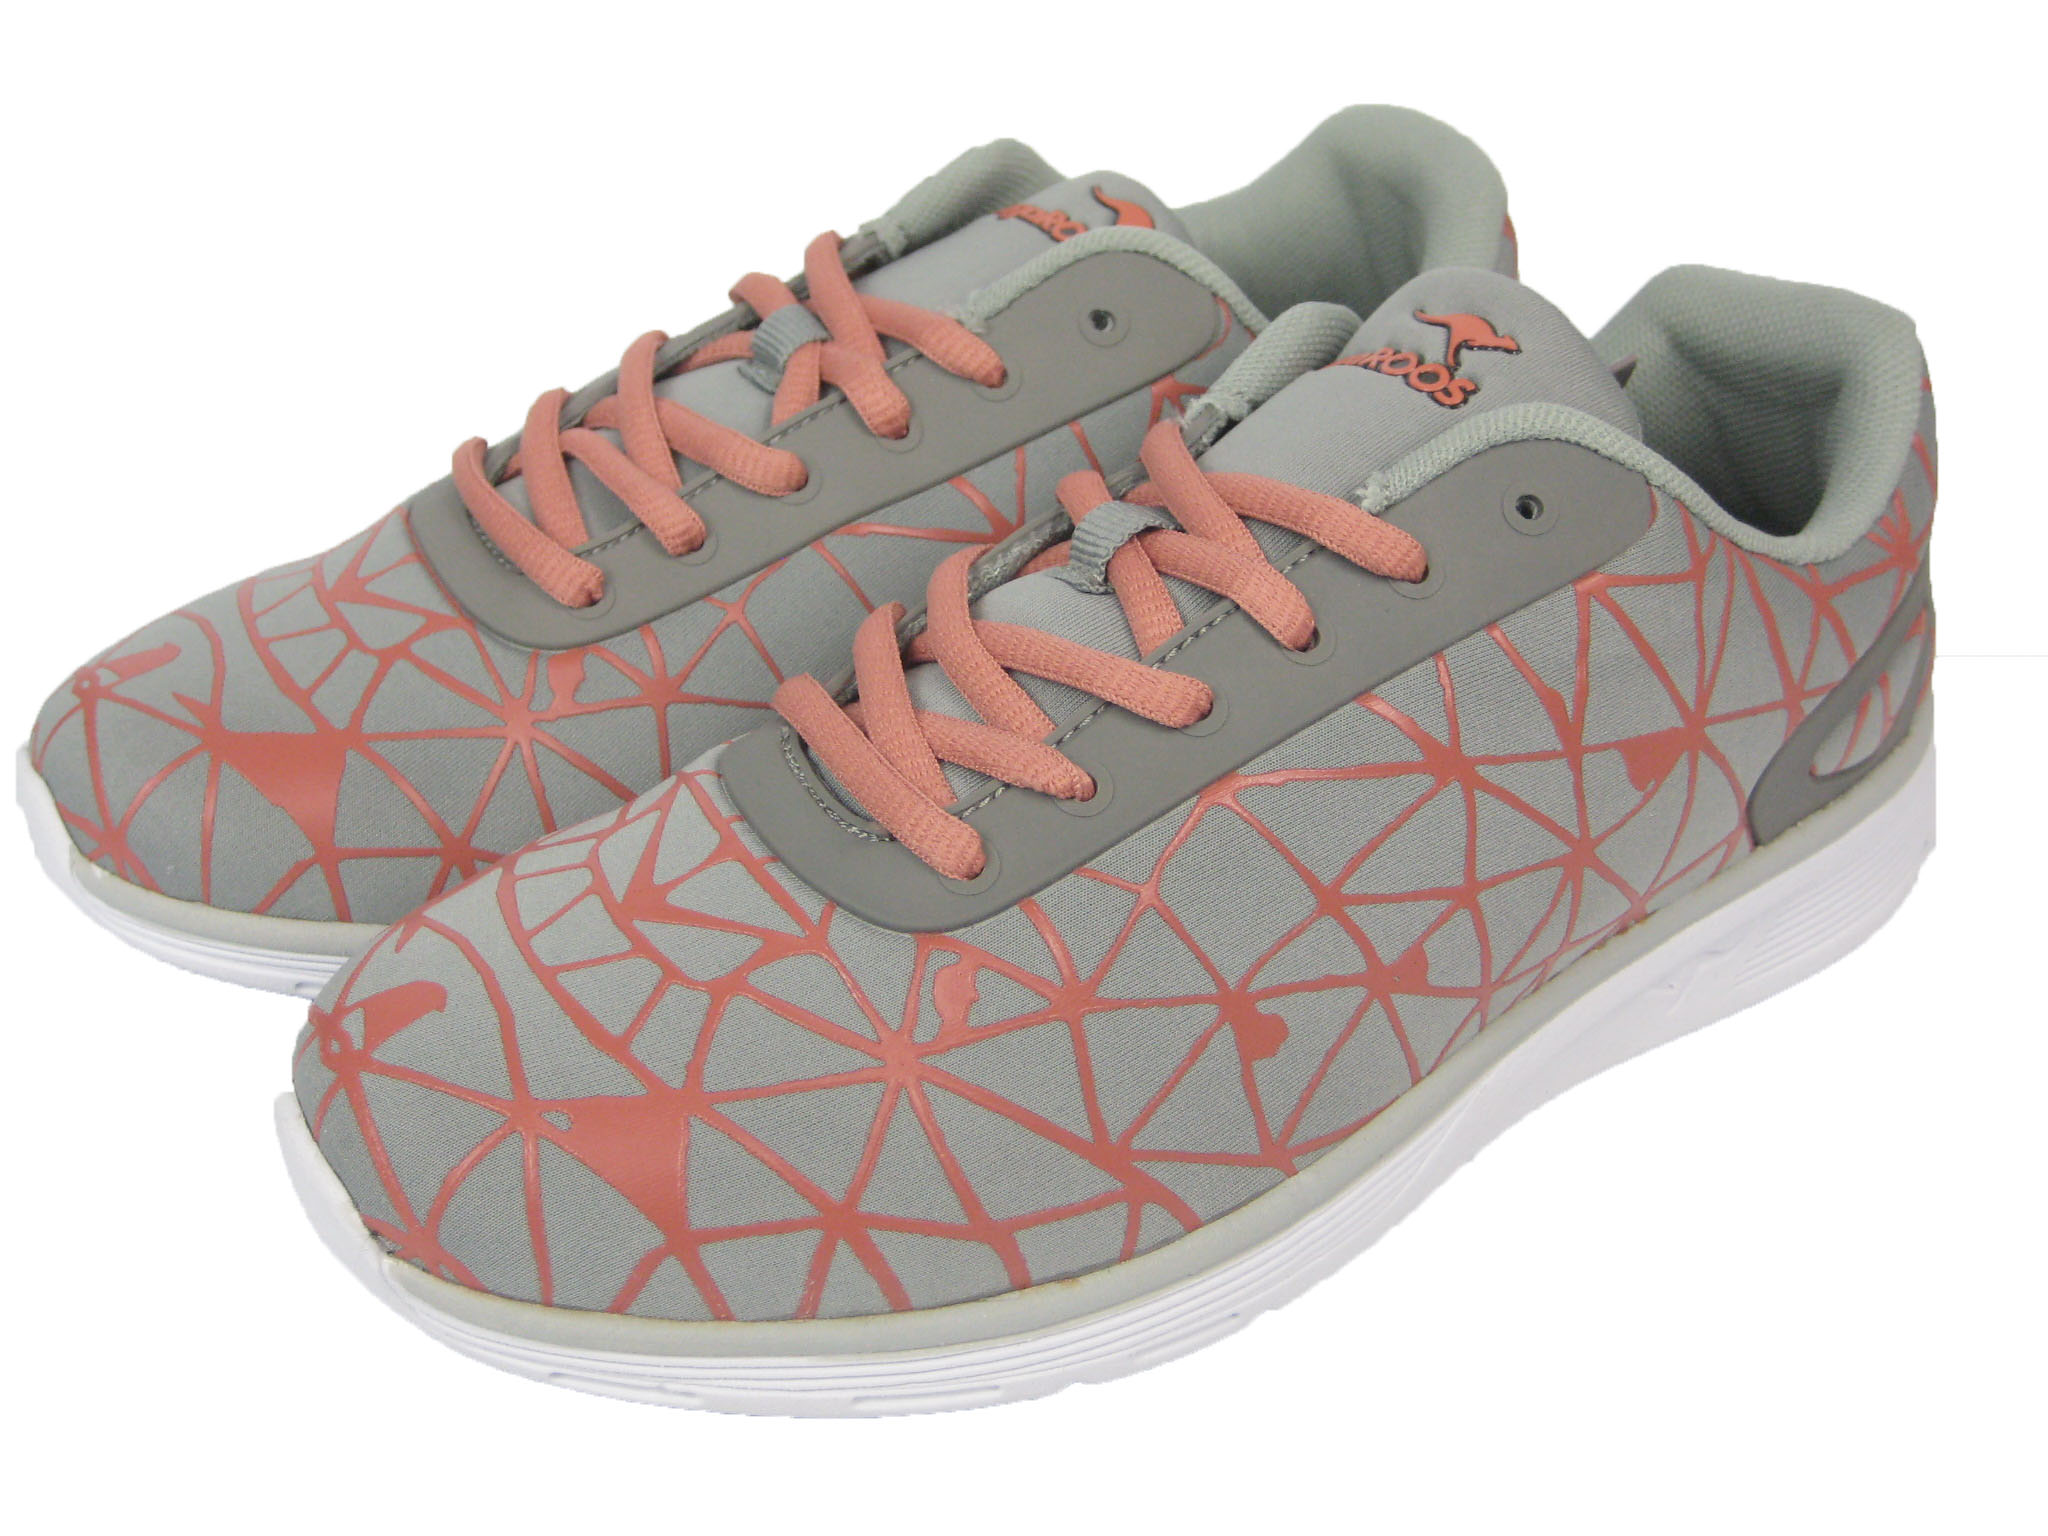 Kangaroos Ladies Shoes Sneaker Running Shoe K-Light Grey/Orange | eBay2048 x 1536